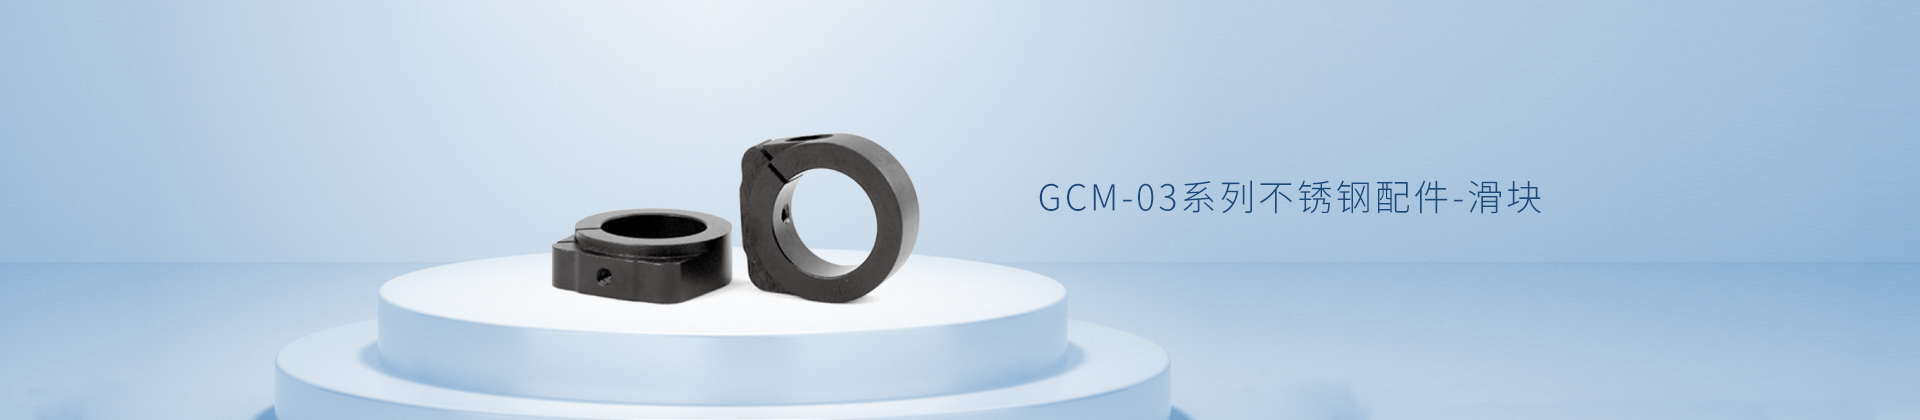 GCM-03系列不锈钢配件-滑块